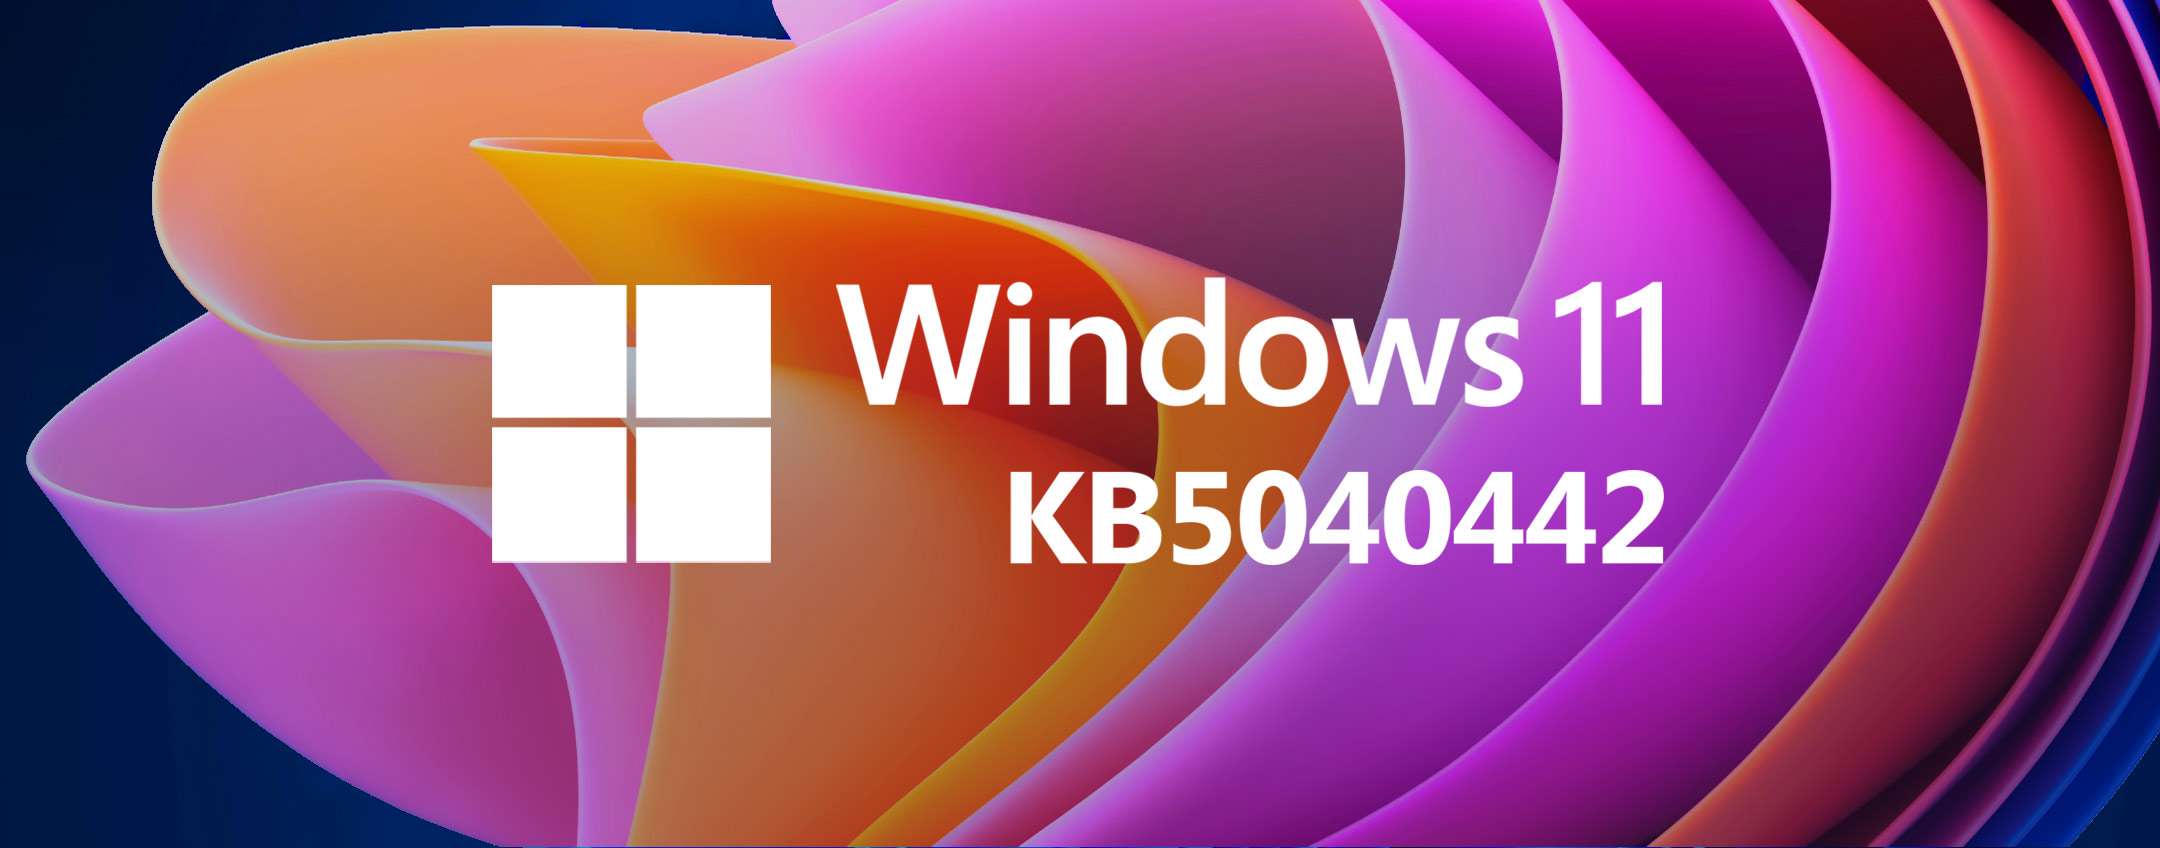 Windows 11 KB5040442: novedades de la actualización